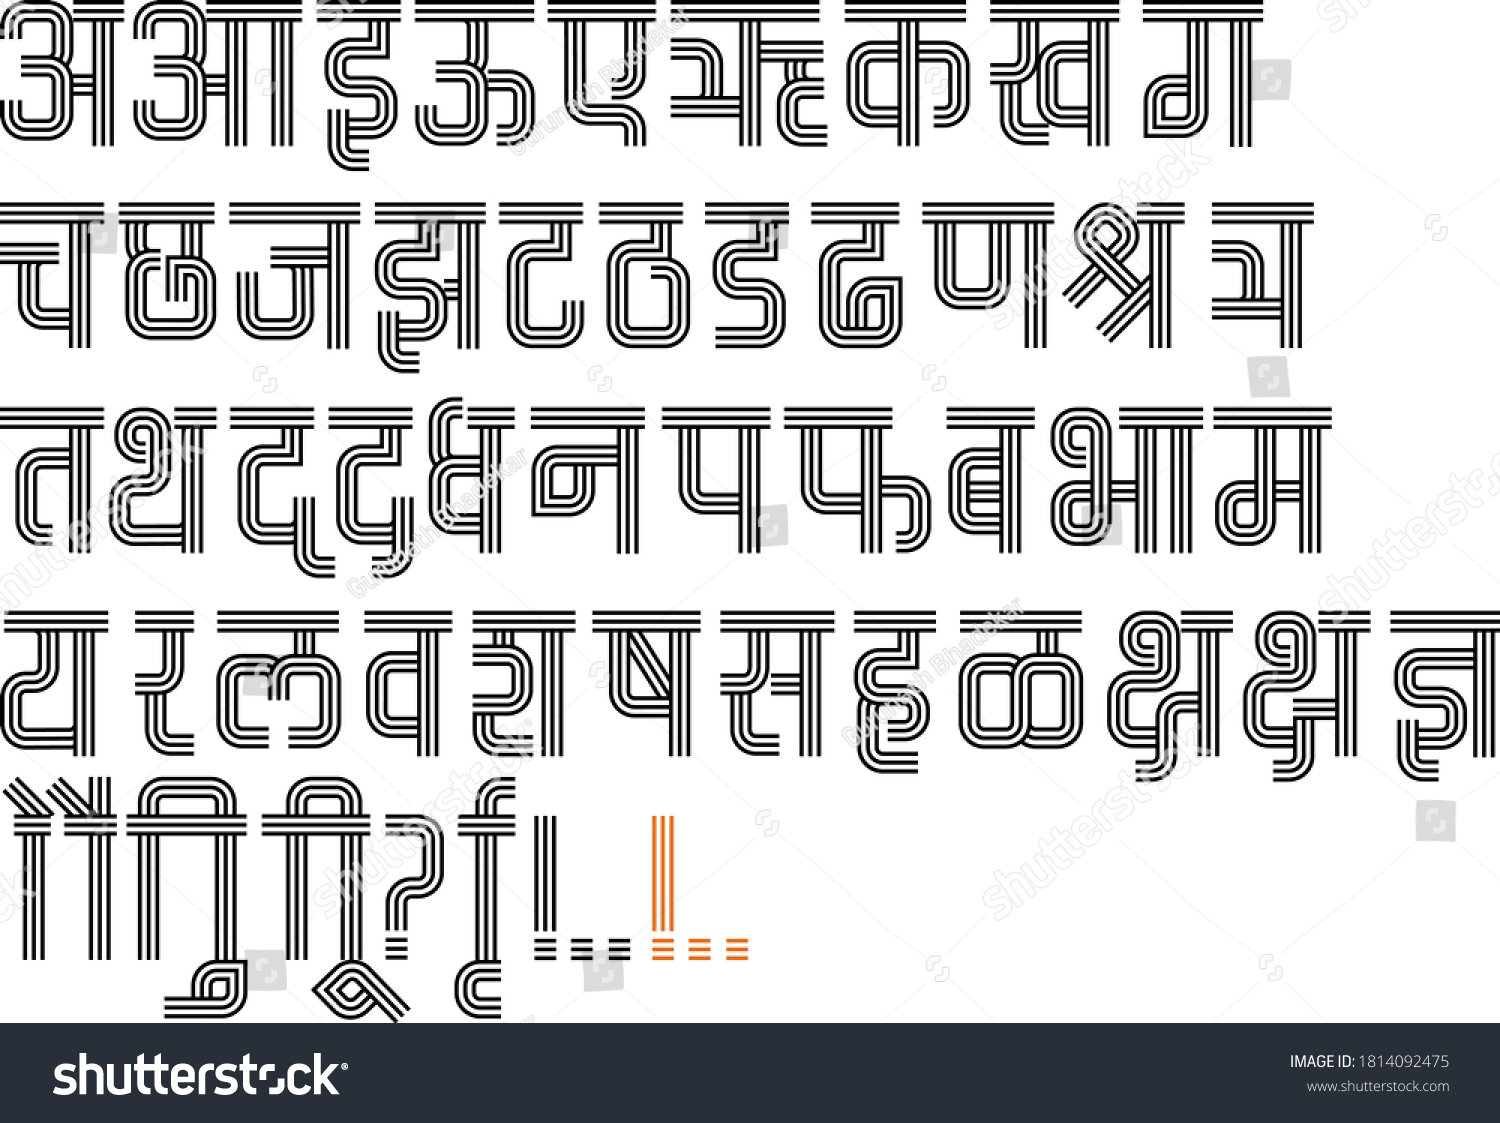 SVG of Handmade Devanagari font for Indian languages Hindi, Sanskrit and Marathi Indian languages svg